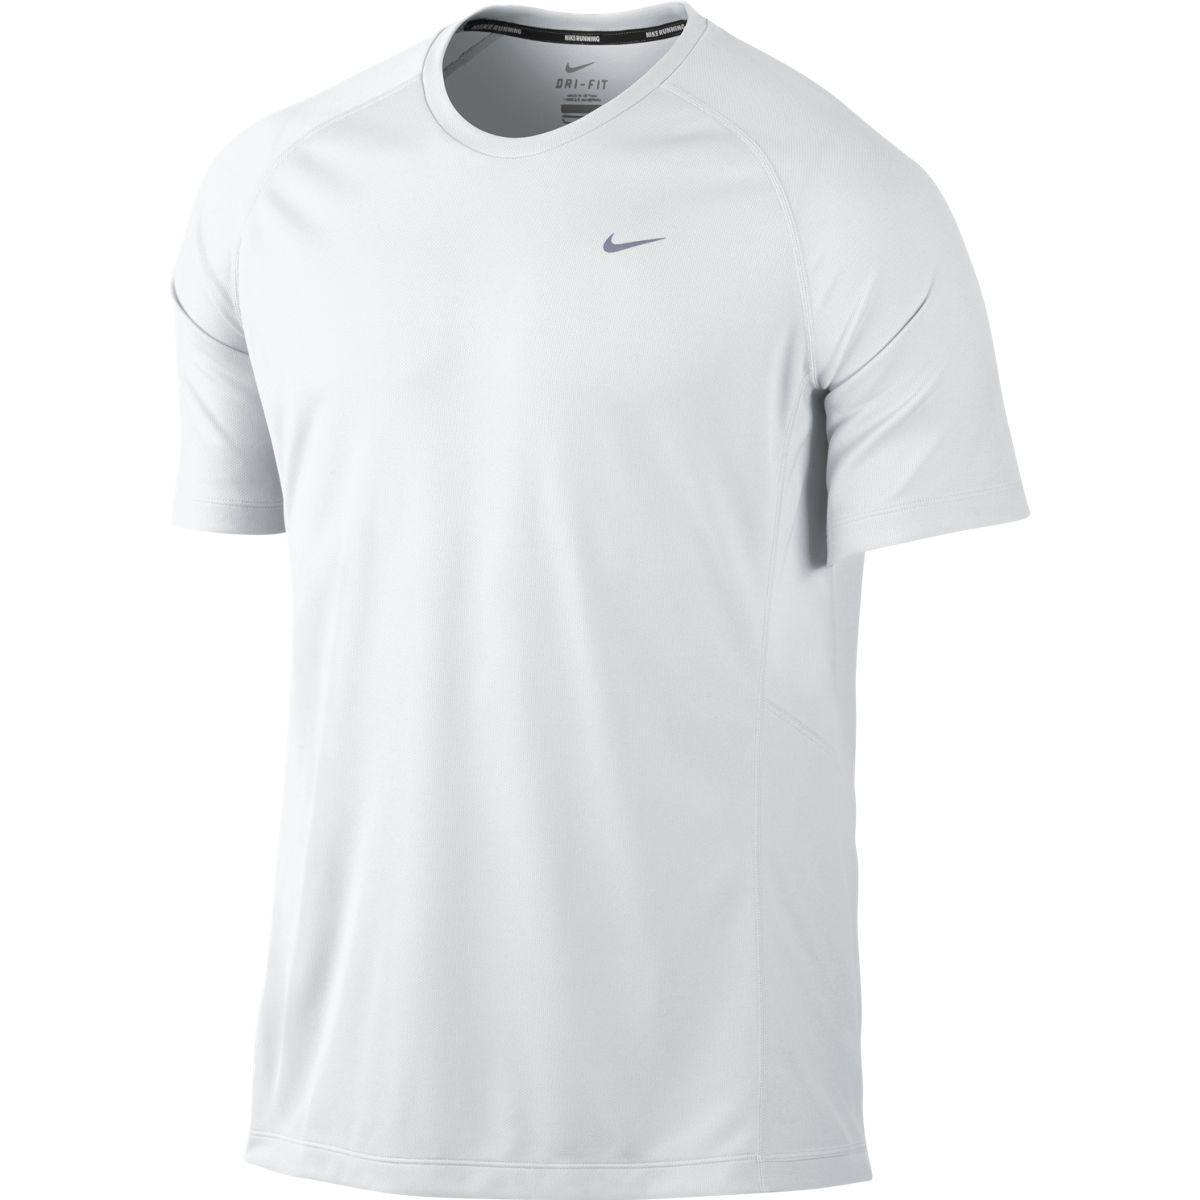 Nike Mens Miler UV Short Sleeve Running Shirt - White/Reflective Silver ...